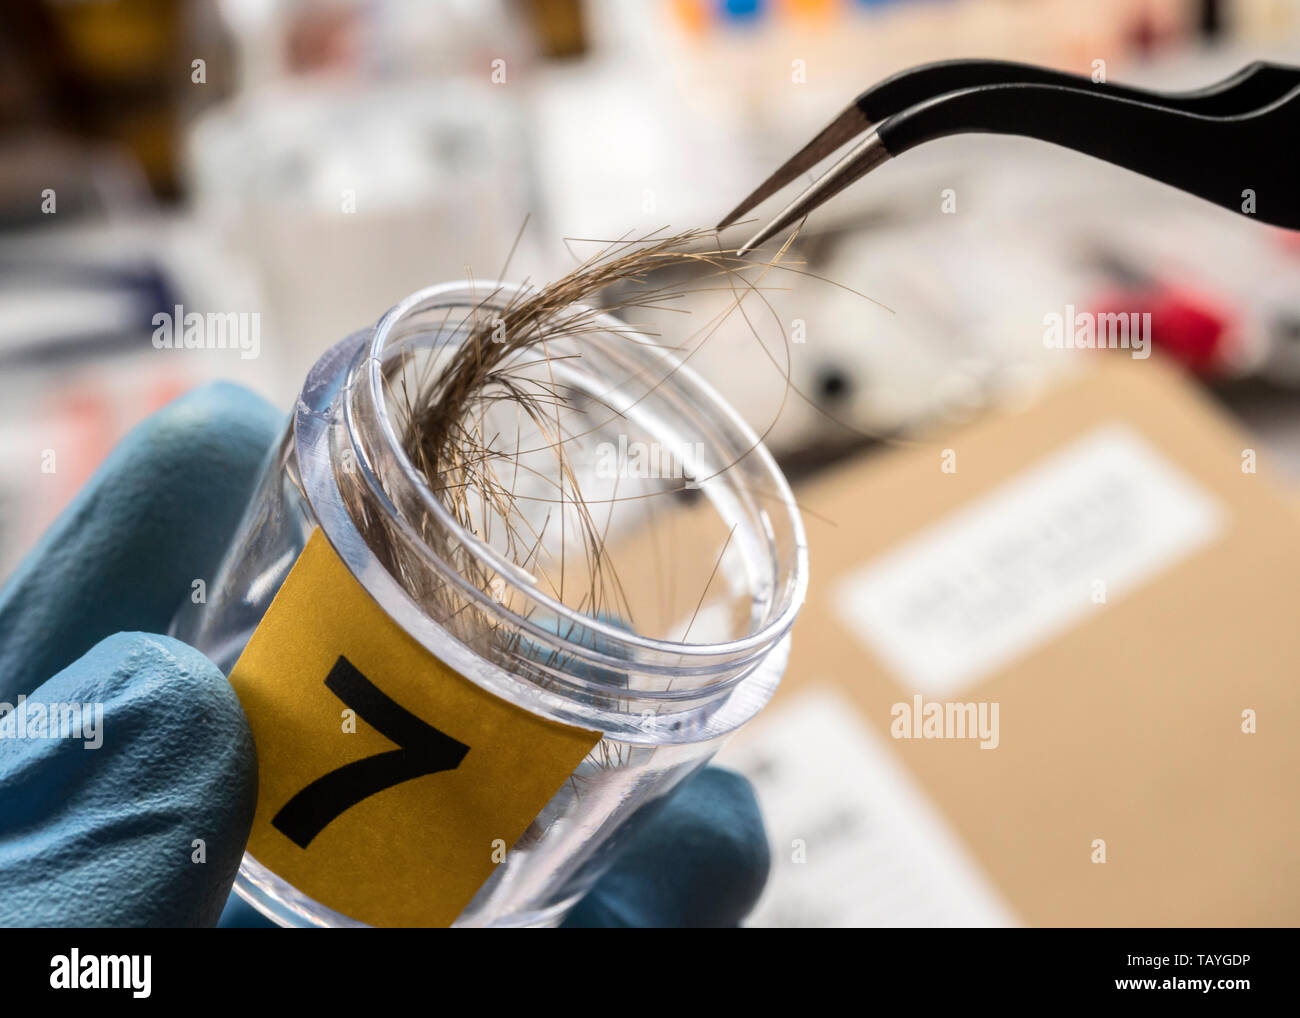 Polizia specializzata analizza i capelli di omicidio vittima con una pinzetta, immagine concettuale Foto Stock